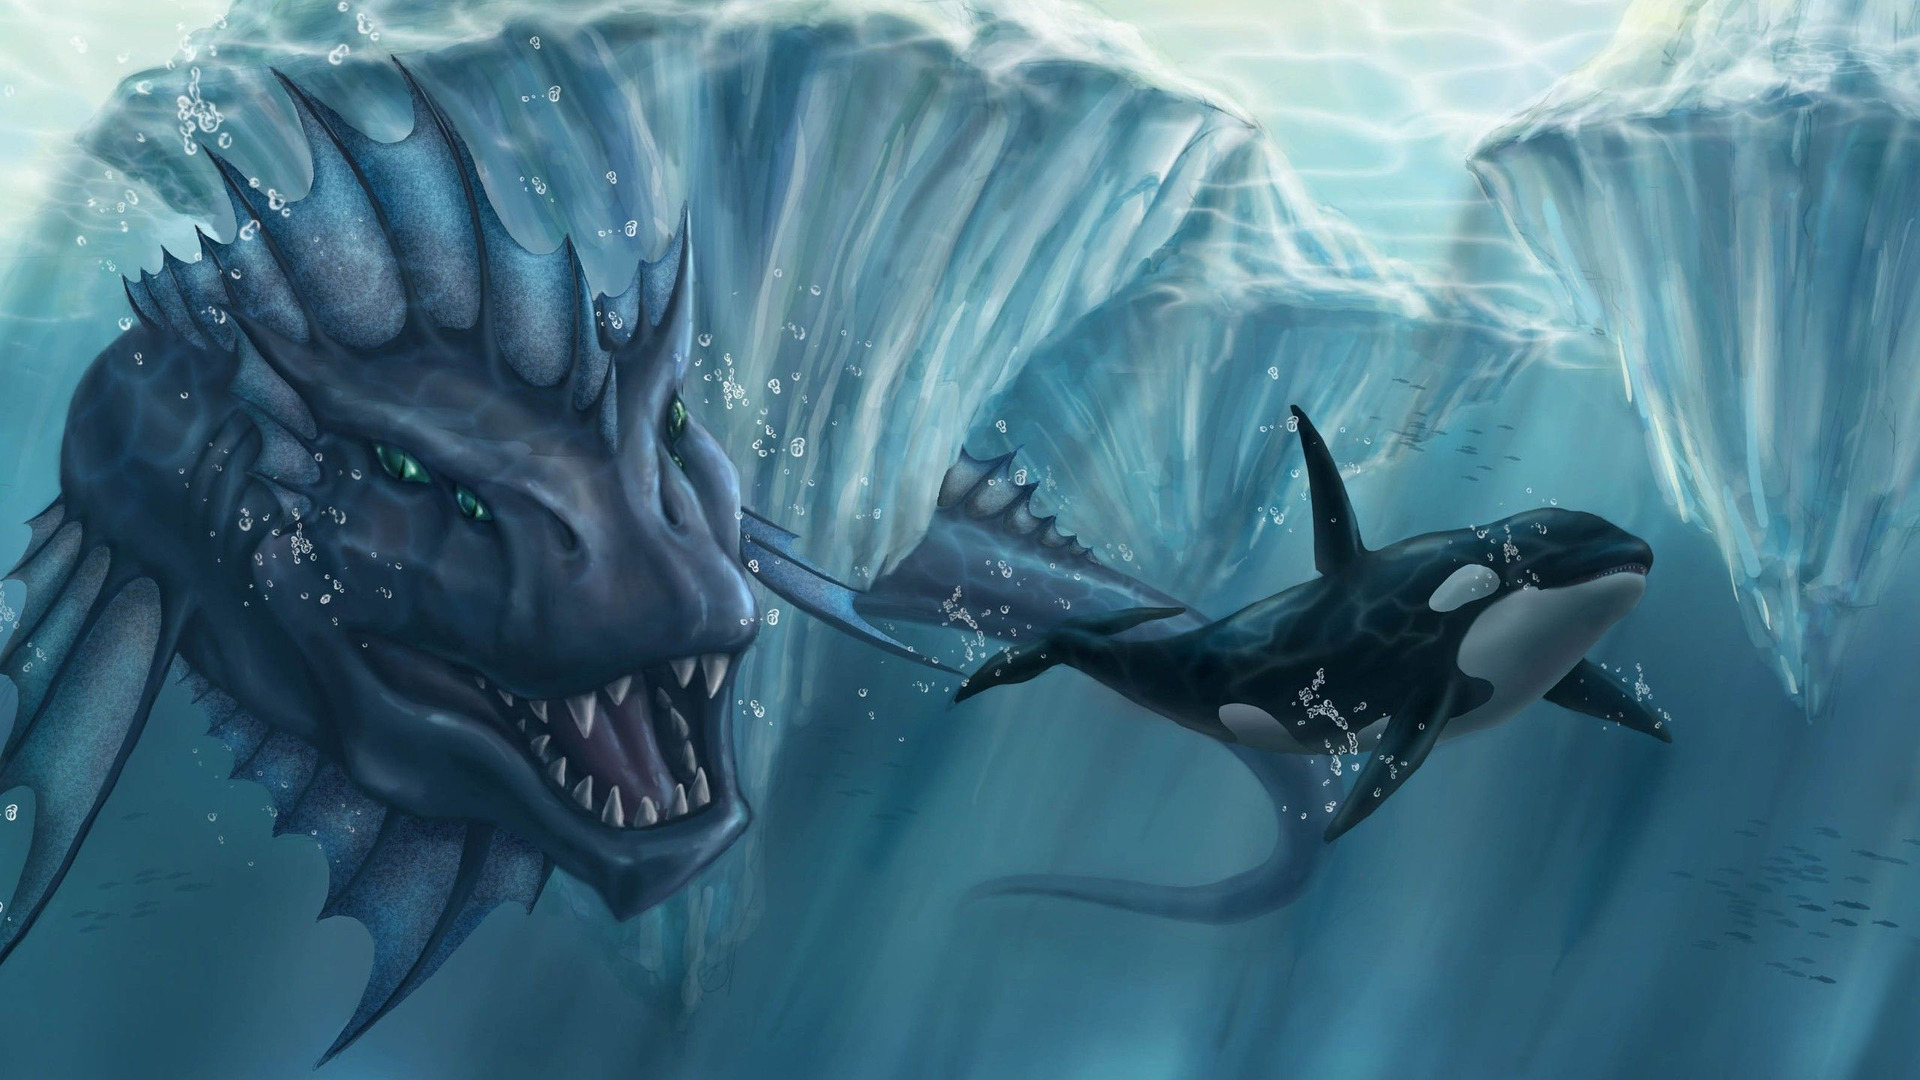 Sea monster chasing the killer whale Wallpaper 7526